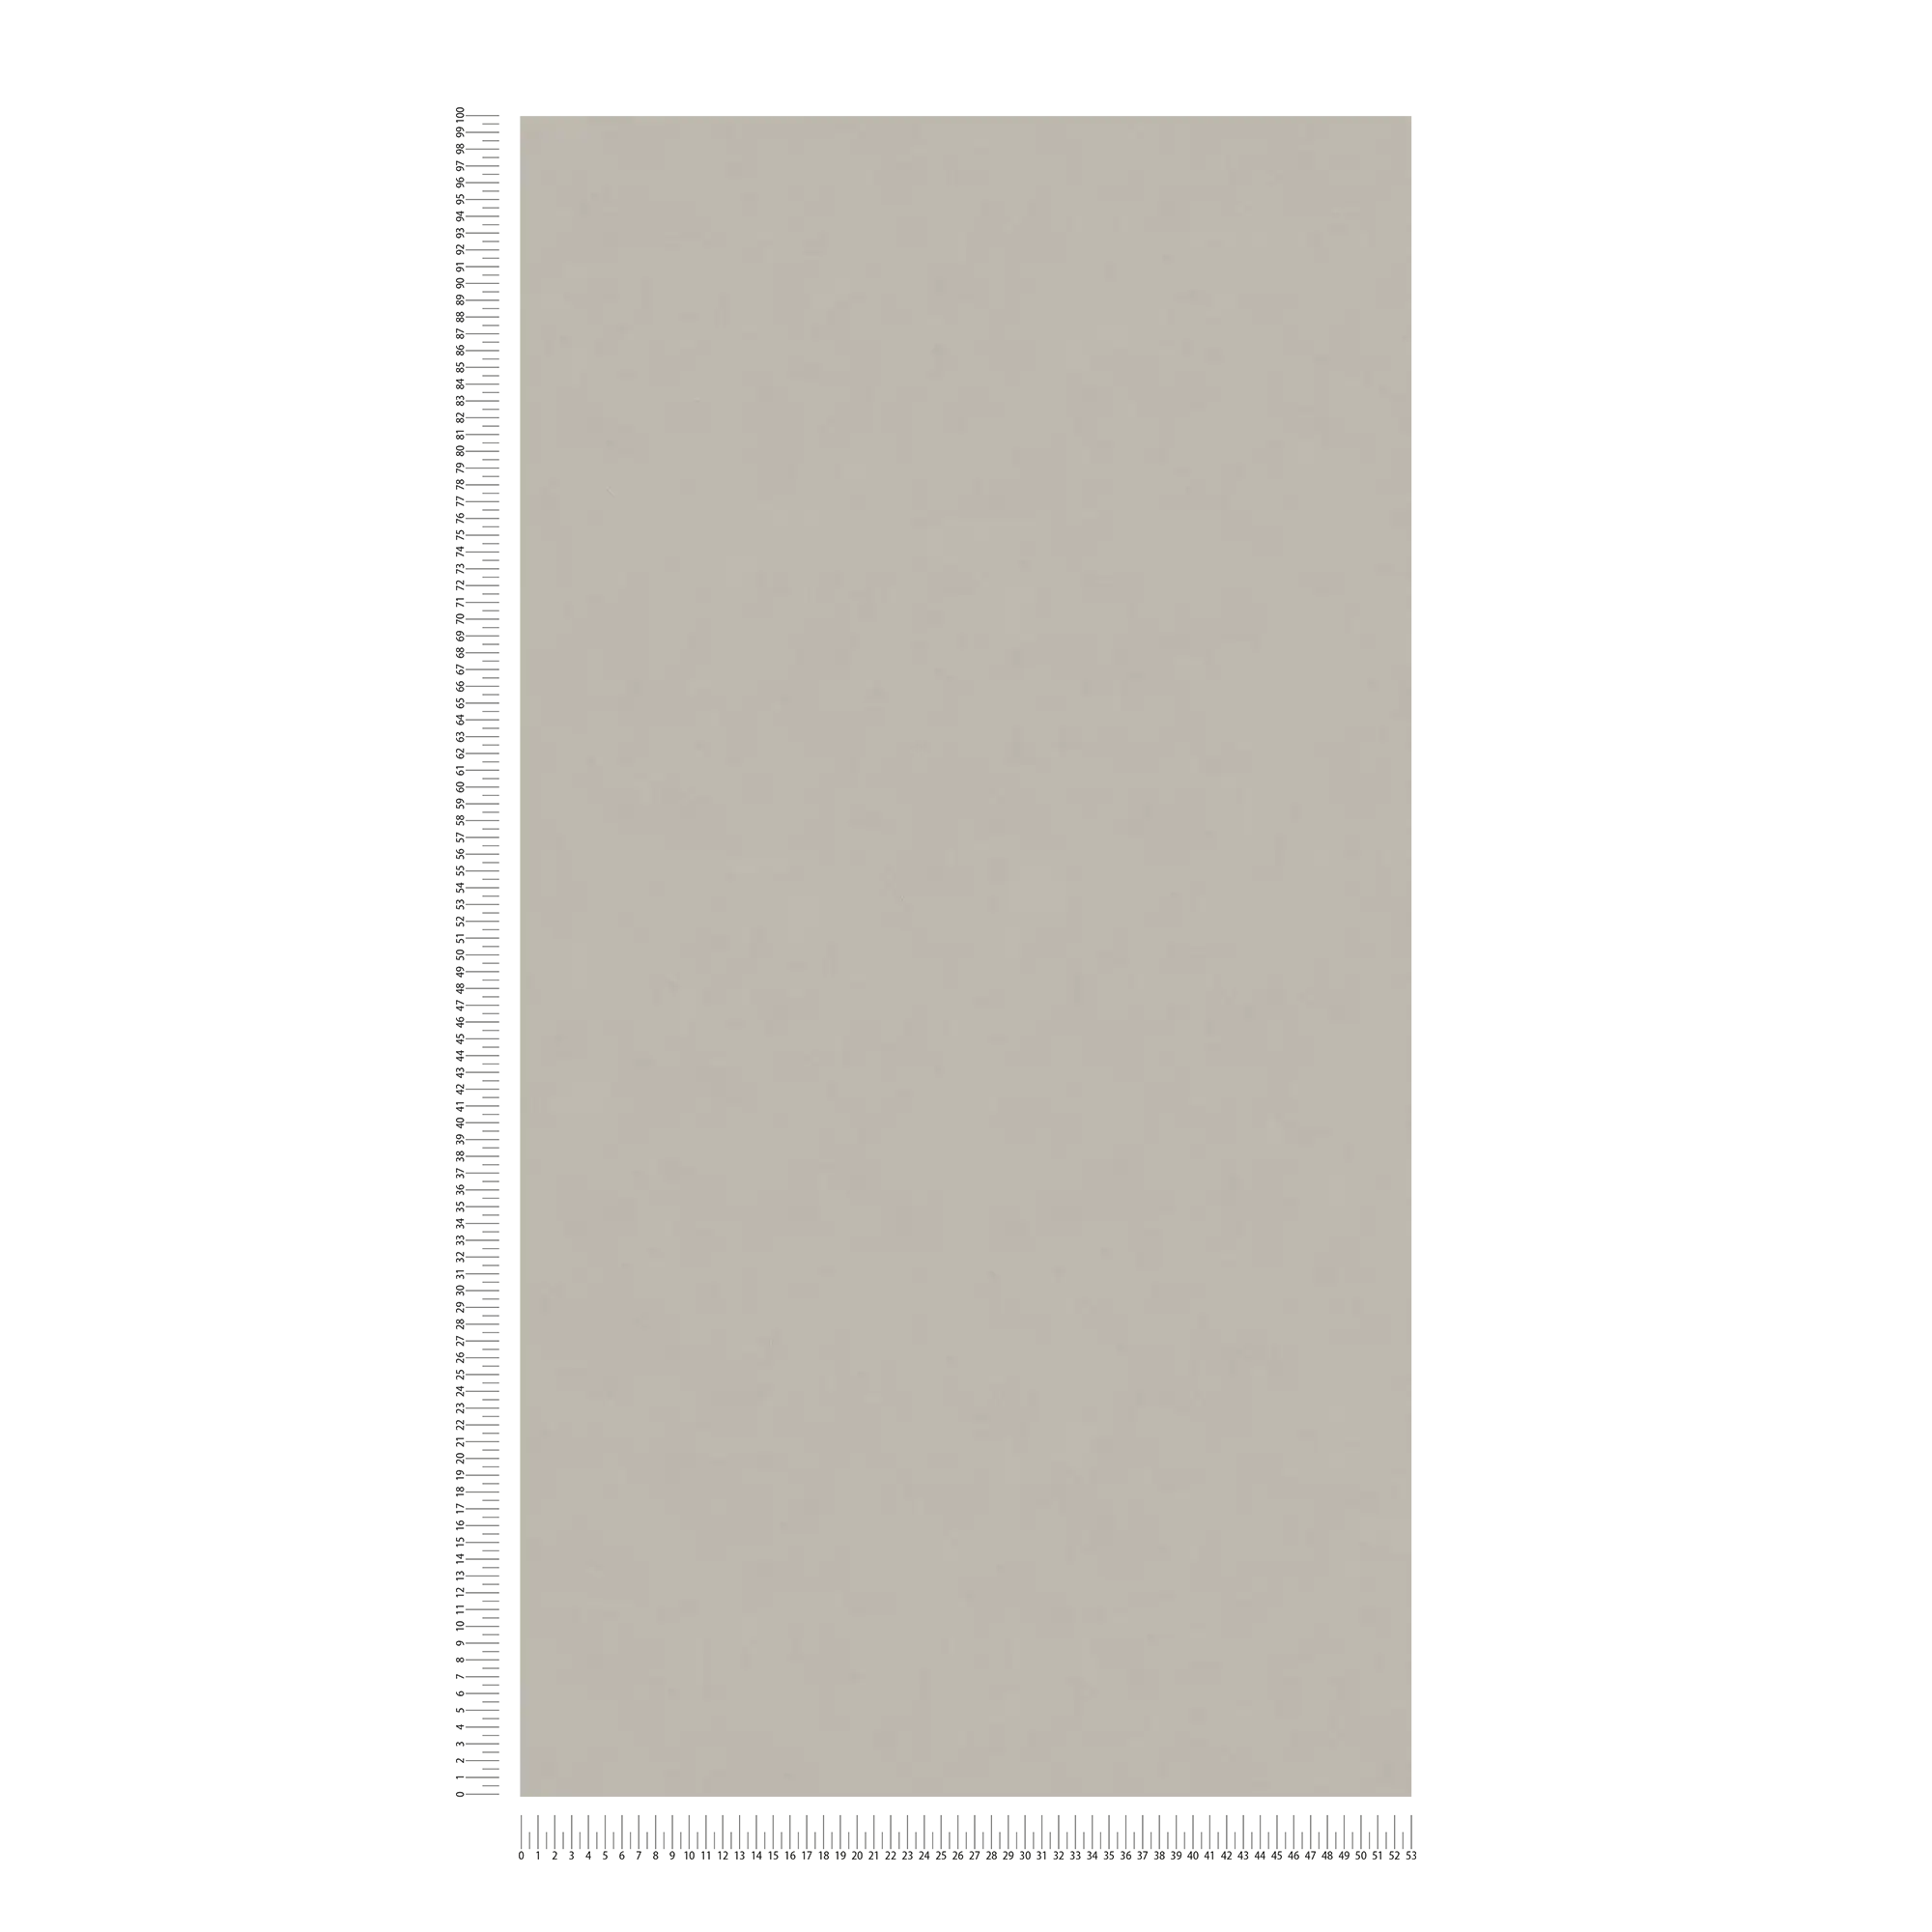             Carta da parati in tessuto non tessuto liscio a cazzuola effetto intonaco - grigio, tortora
        